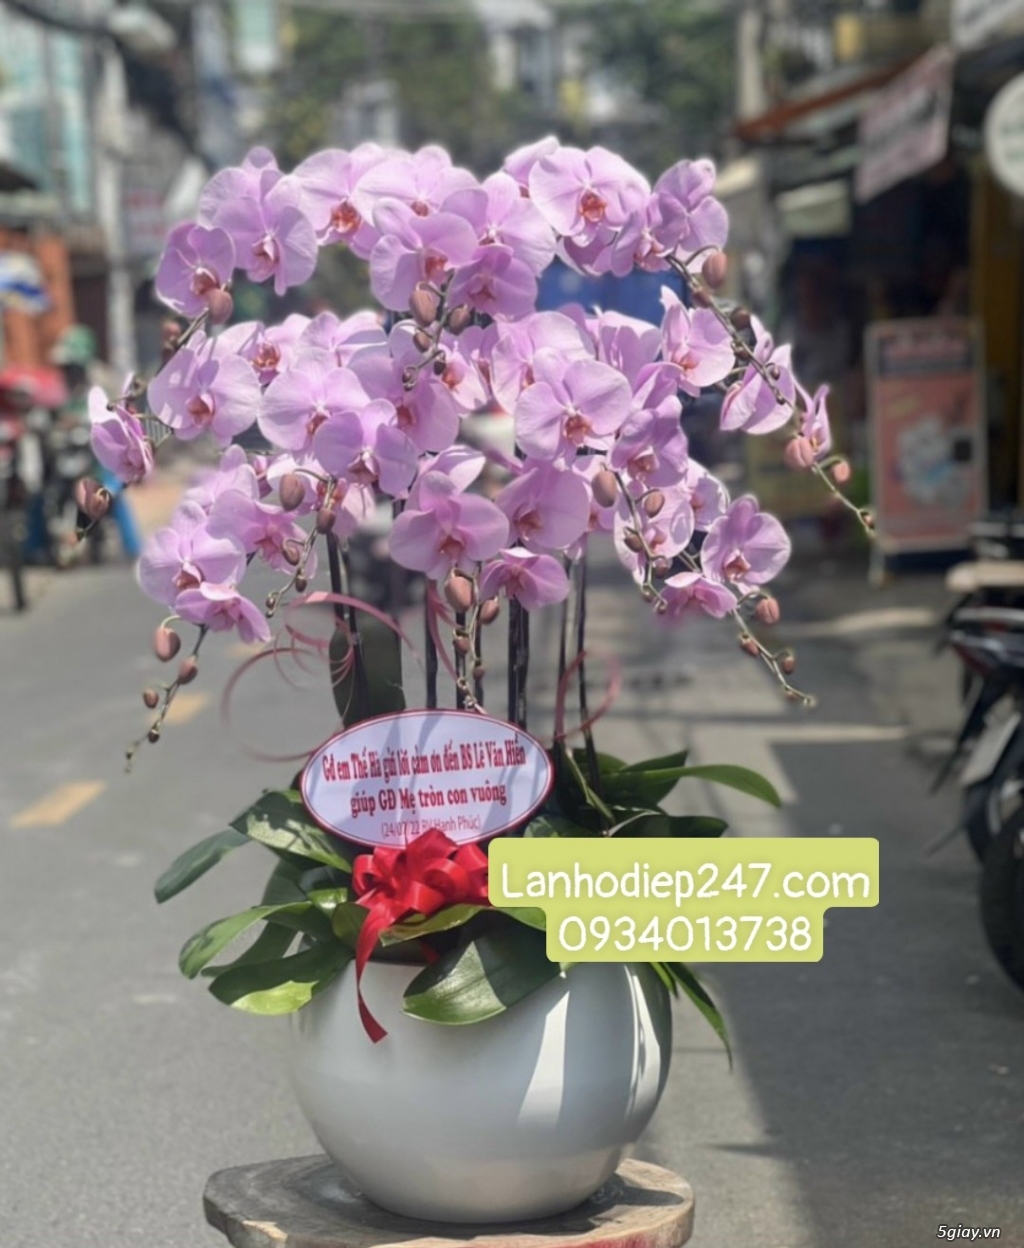 Shop hoa tươi chuyên cung cấp Lan Hồ Điệp VIP nhất Sài Gòn 0934013738 - 14